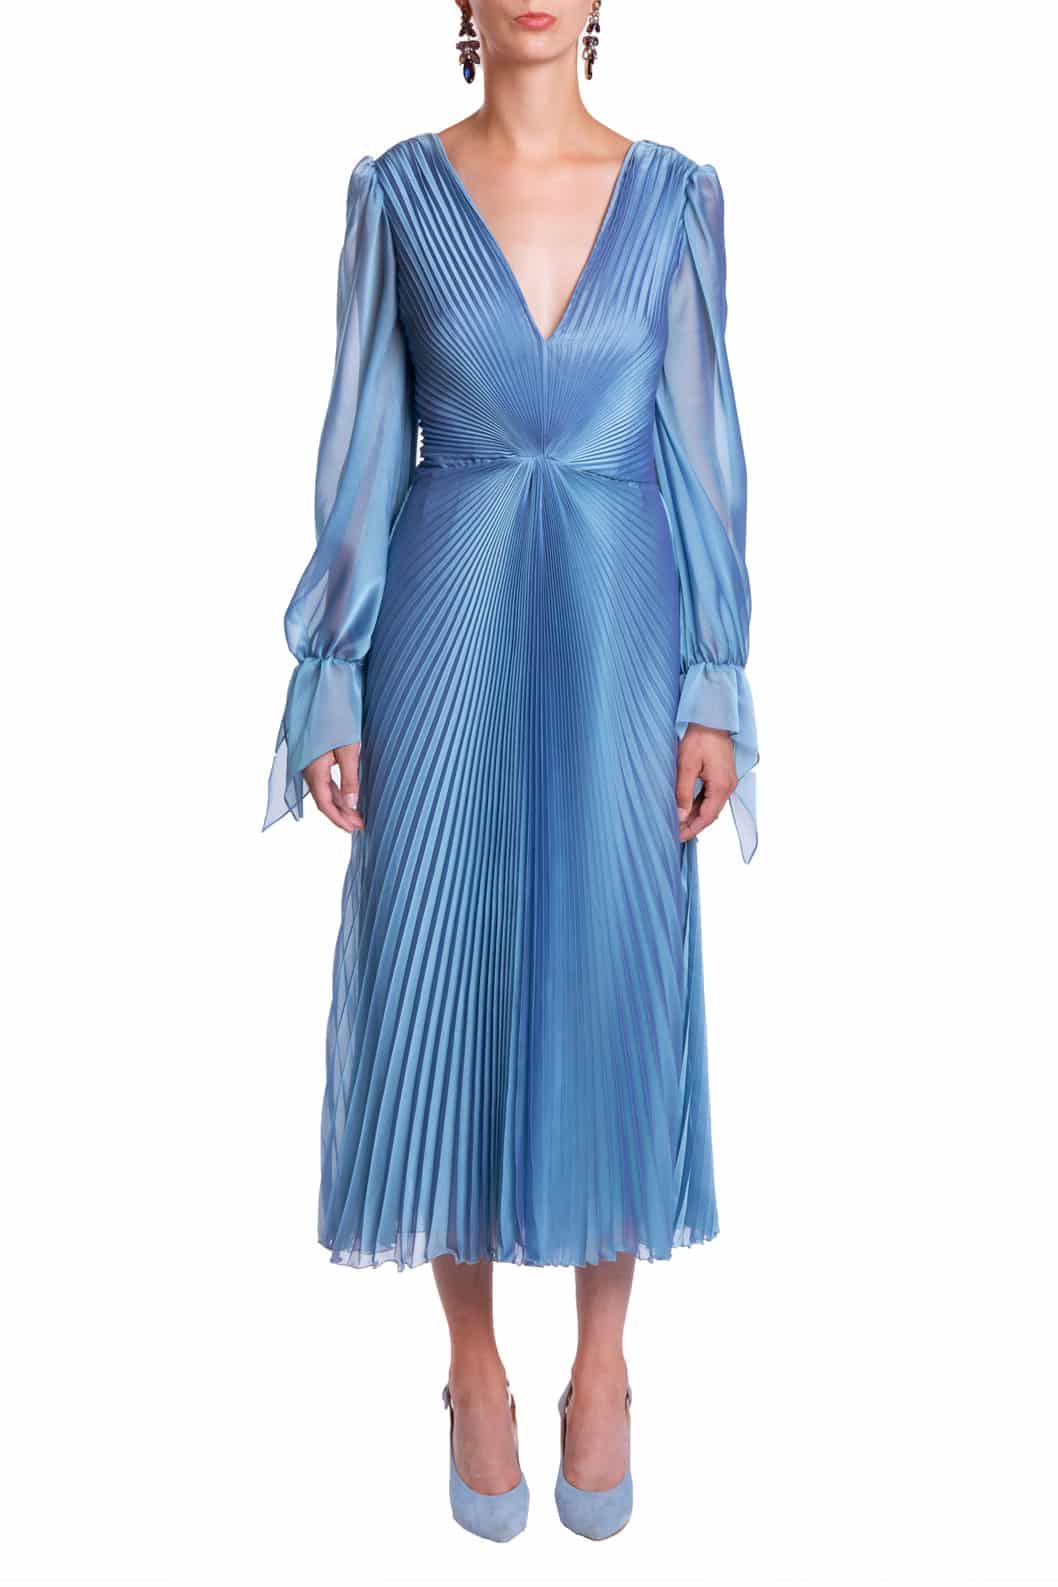 Designer Elegant Dresses for Women | Luisa Beccaria